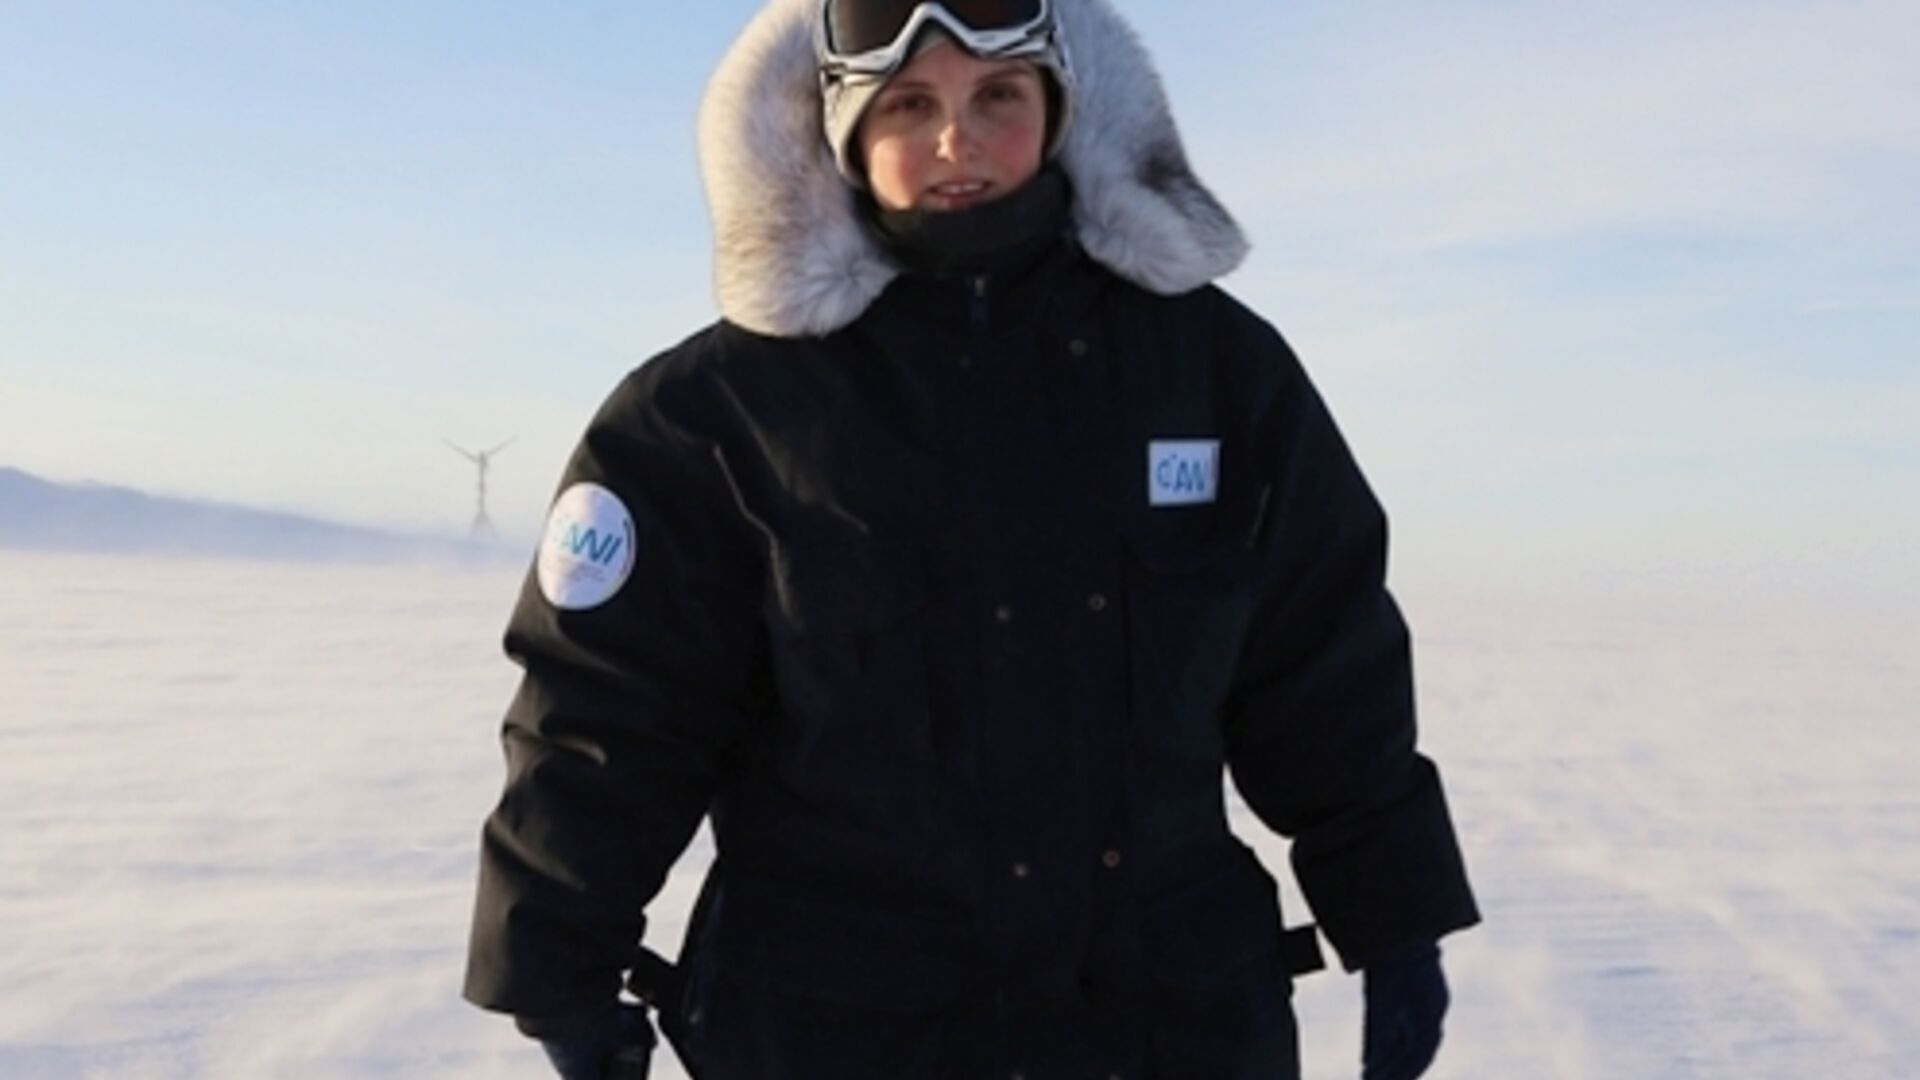 प्लास्टिक फील्डवर्क: आर्कटिक शोधकर्ता और होहर सोनब्लिक पर्वत पर वेधशाला के प्रमुख एल्के लुडविग ने अपनी टीम के साथ मिलकर नैनोप्लास्टिक के नमूने एकत्र किए: प्रतिभाशाली शोधकर्ता ने पहले अंटार्कटिका में अनुसंधान स्टेशन जर्मन पोलारिस में काम किया था